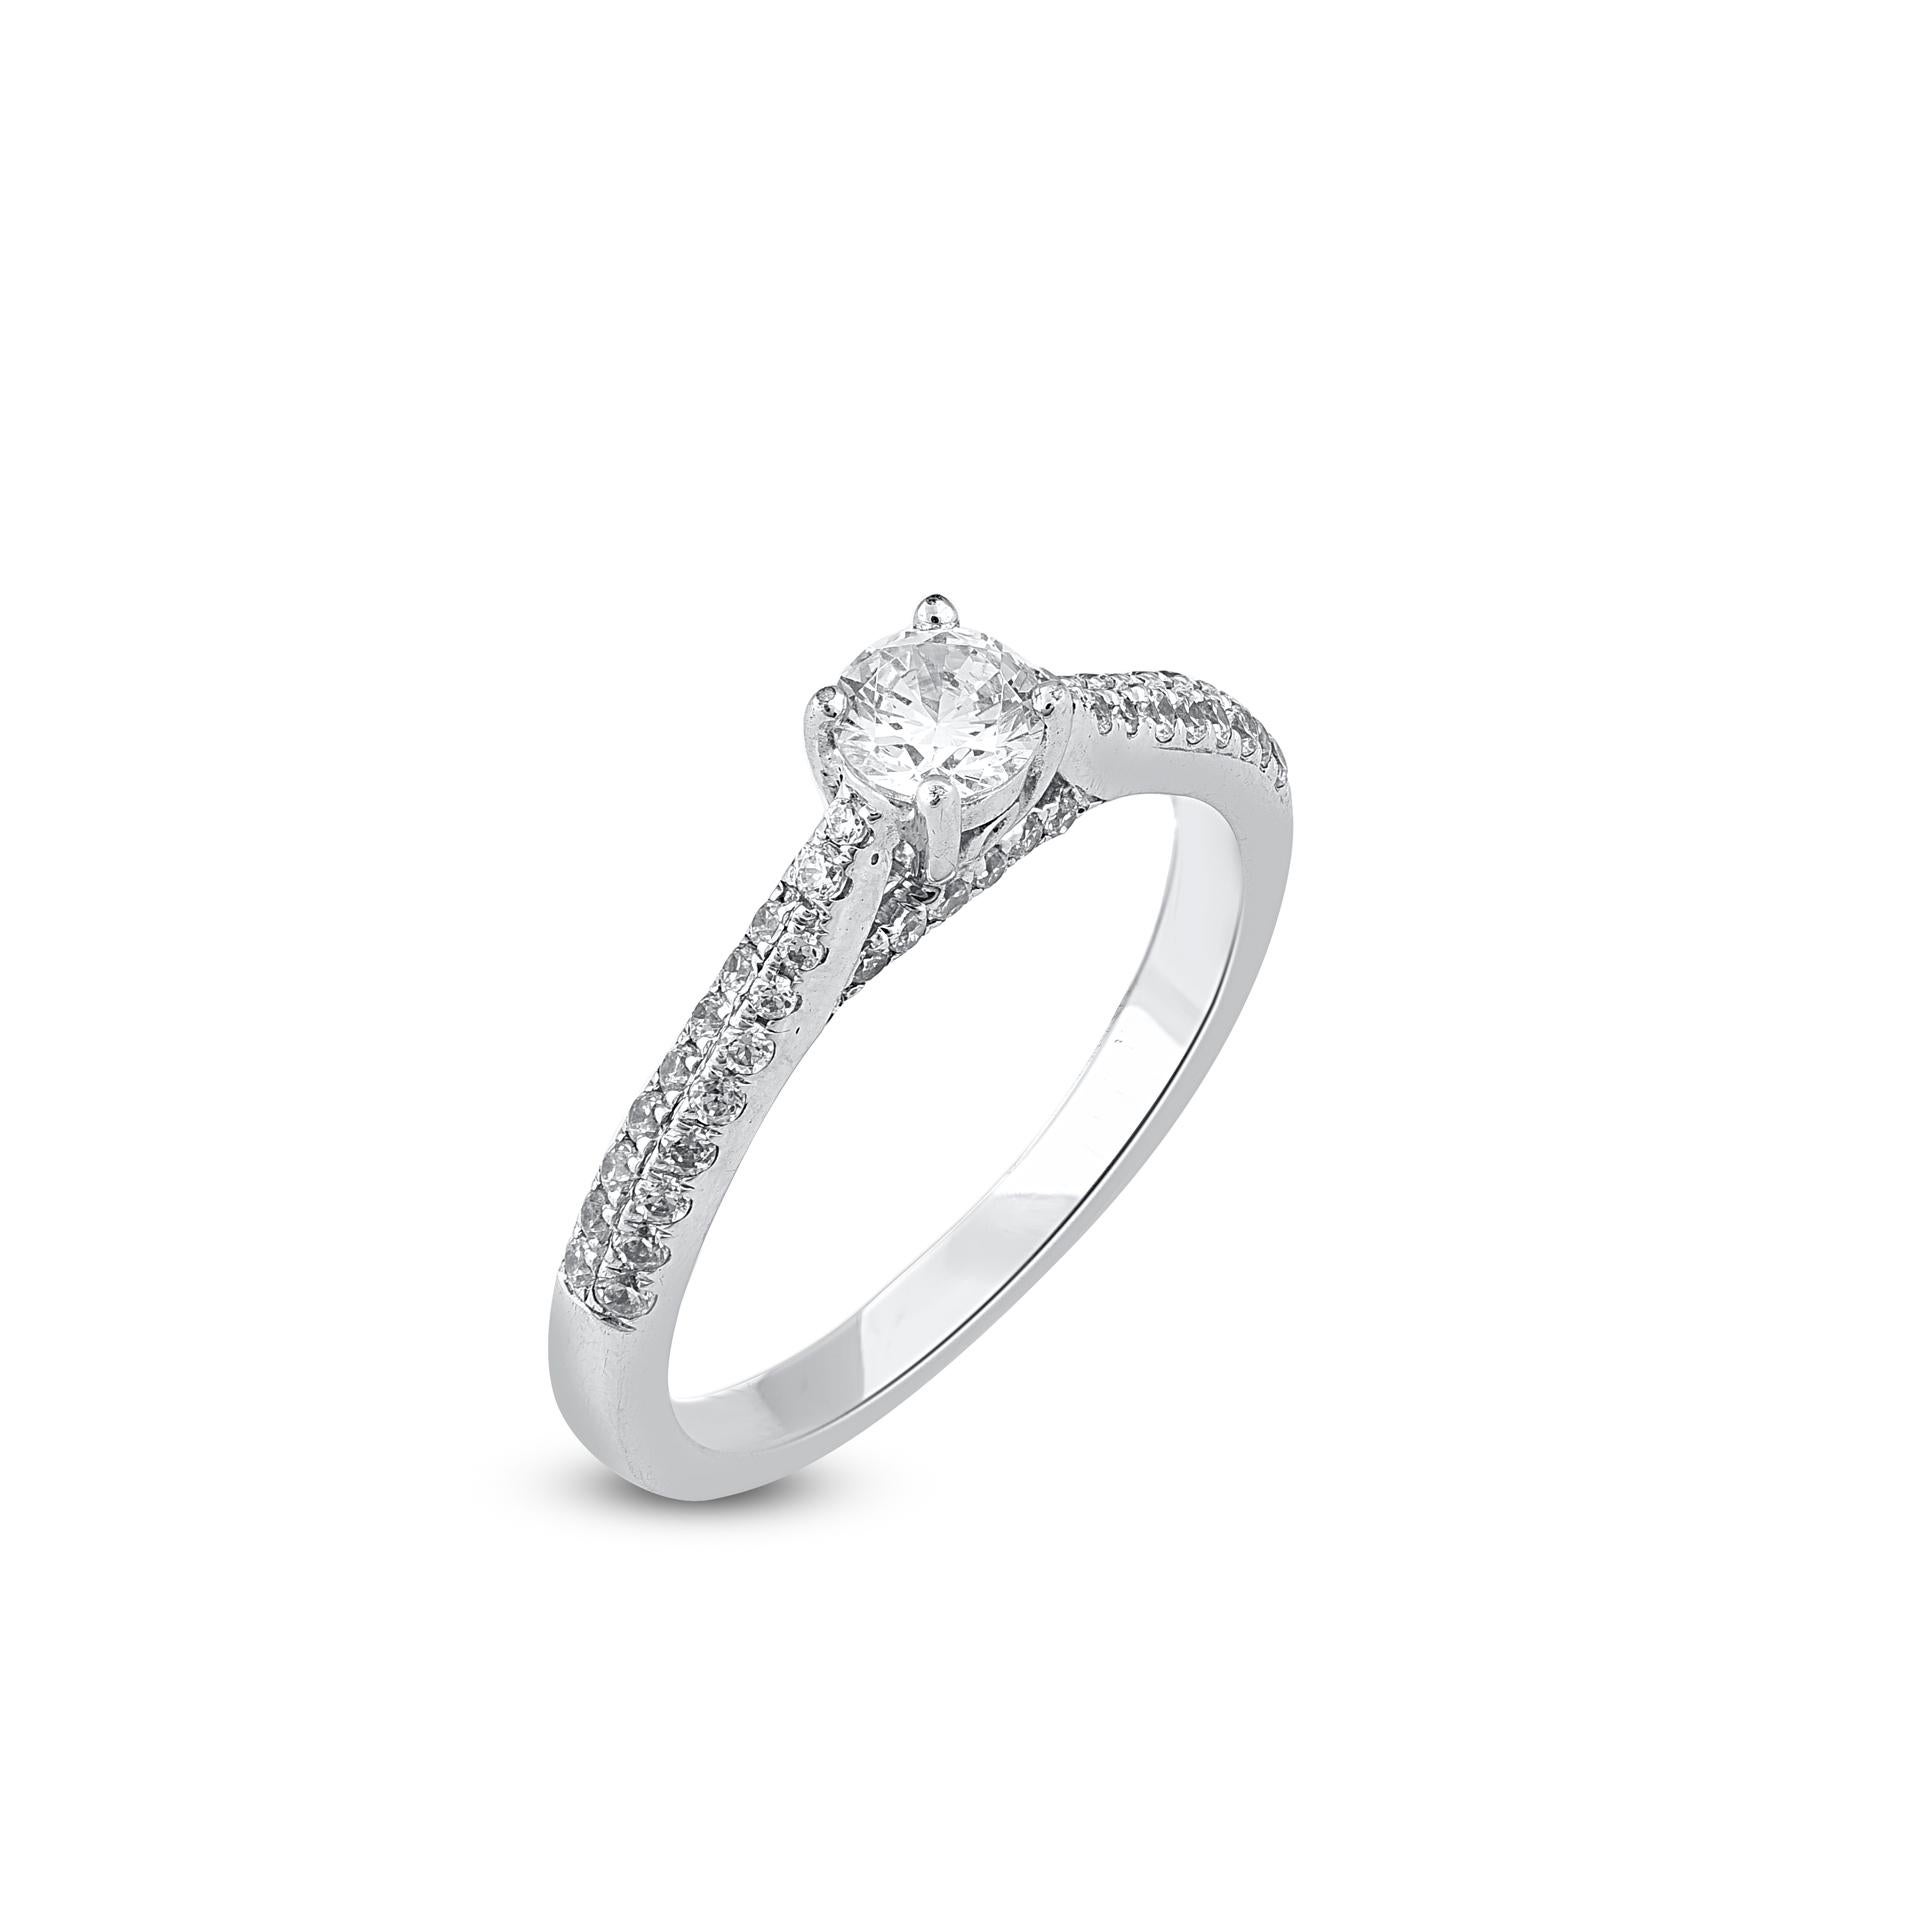 Dieser wirklich exquisite Diamantring mit 0,33 ct Mittelstein und 0,33 ct ausgekleidetem Schaft wird wegen der ihm innewohnenden klassischen Schönheit und Eleganz mit Sicherheit bewundert werden. Das Gesamtgewicht der Diamanten 0,66 Karat, G-H